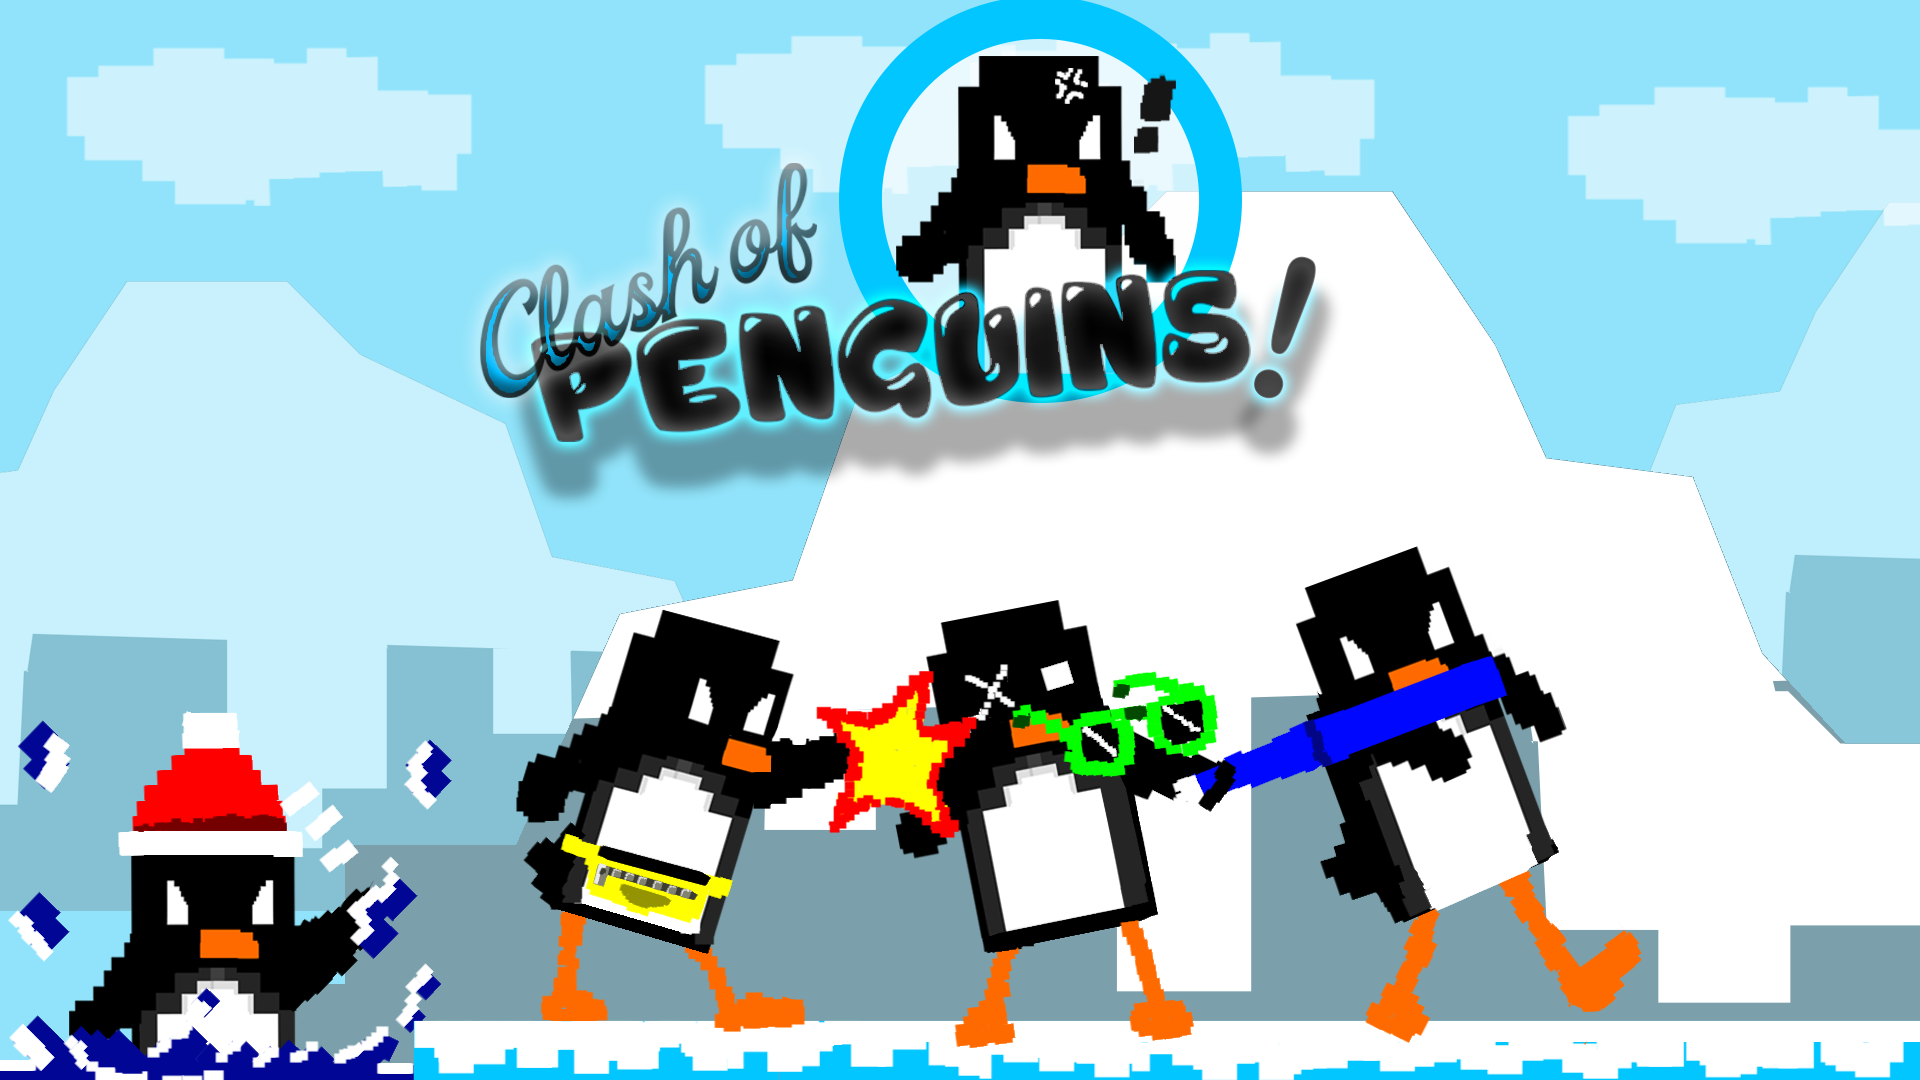 Clash of Penguins